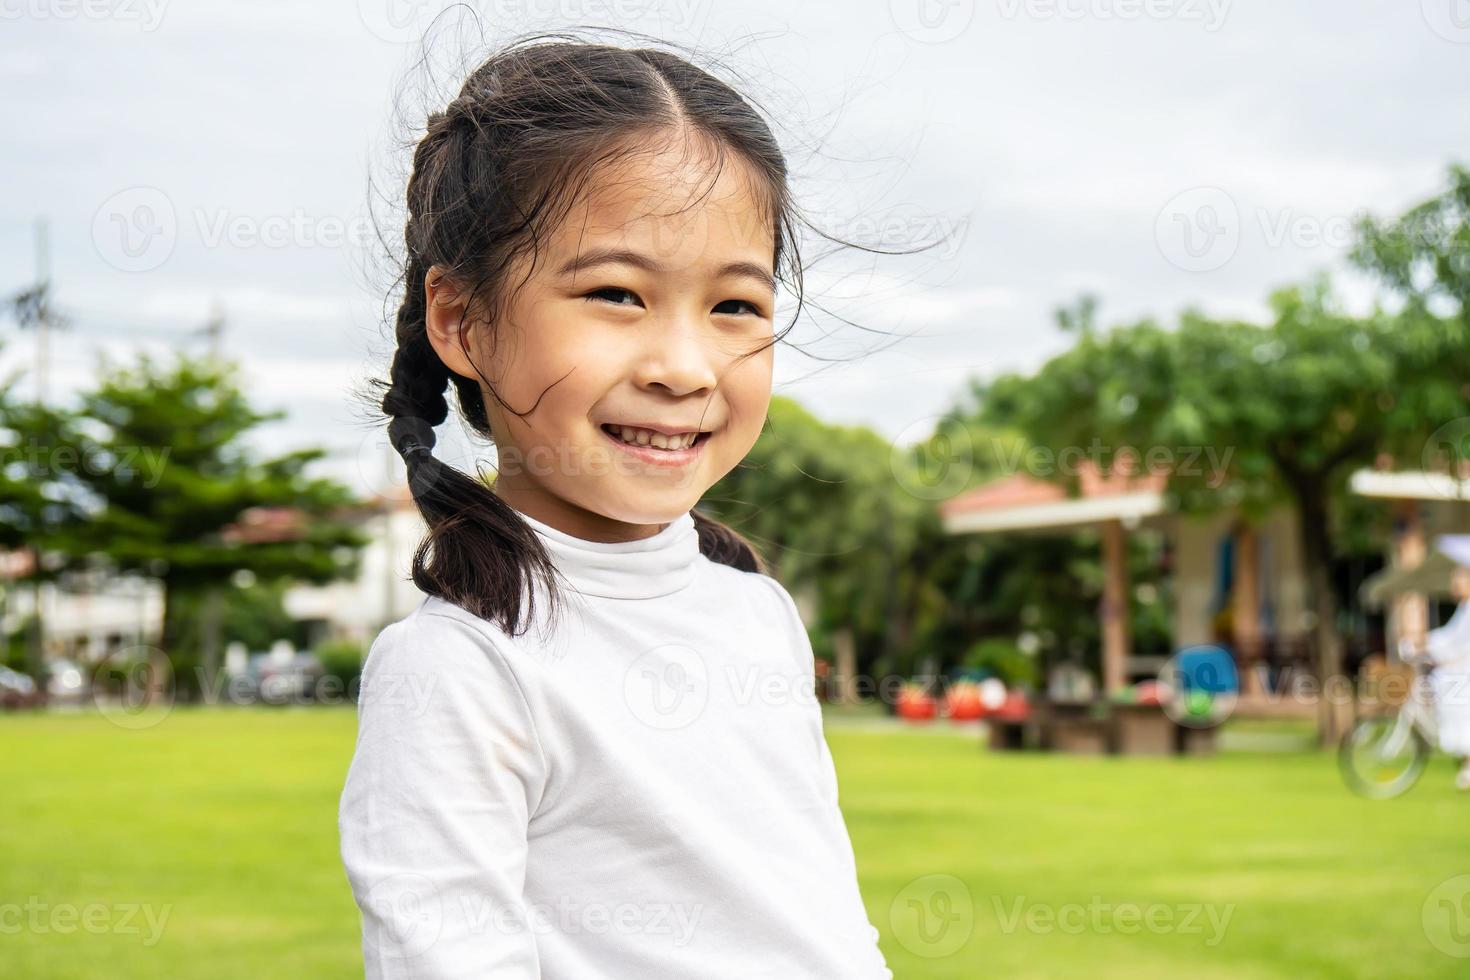 retrato de una linda niñita asiática parada en un parque de verano mirando a la cámara sonriendo alegremente, riéndose, expresivas expresiones faciales. foto